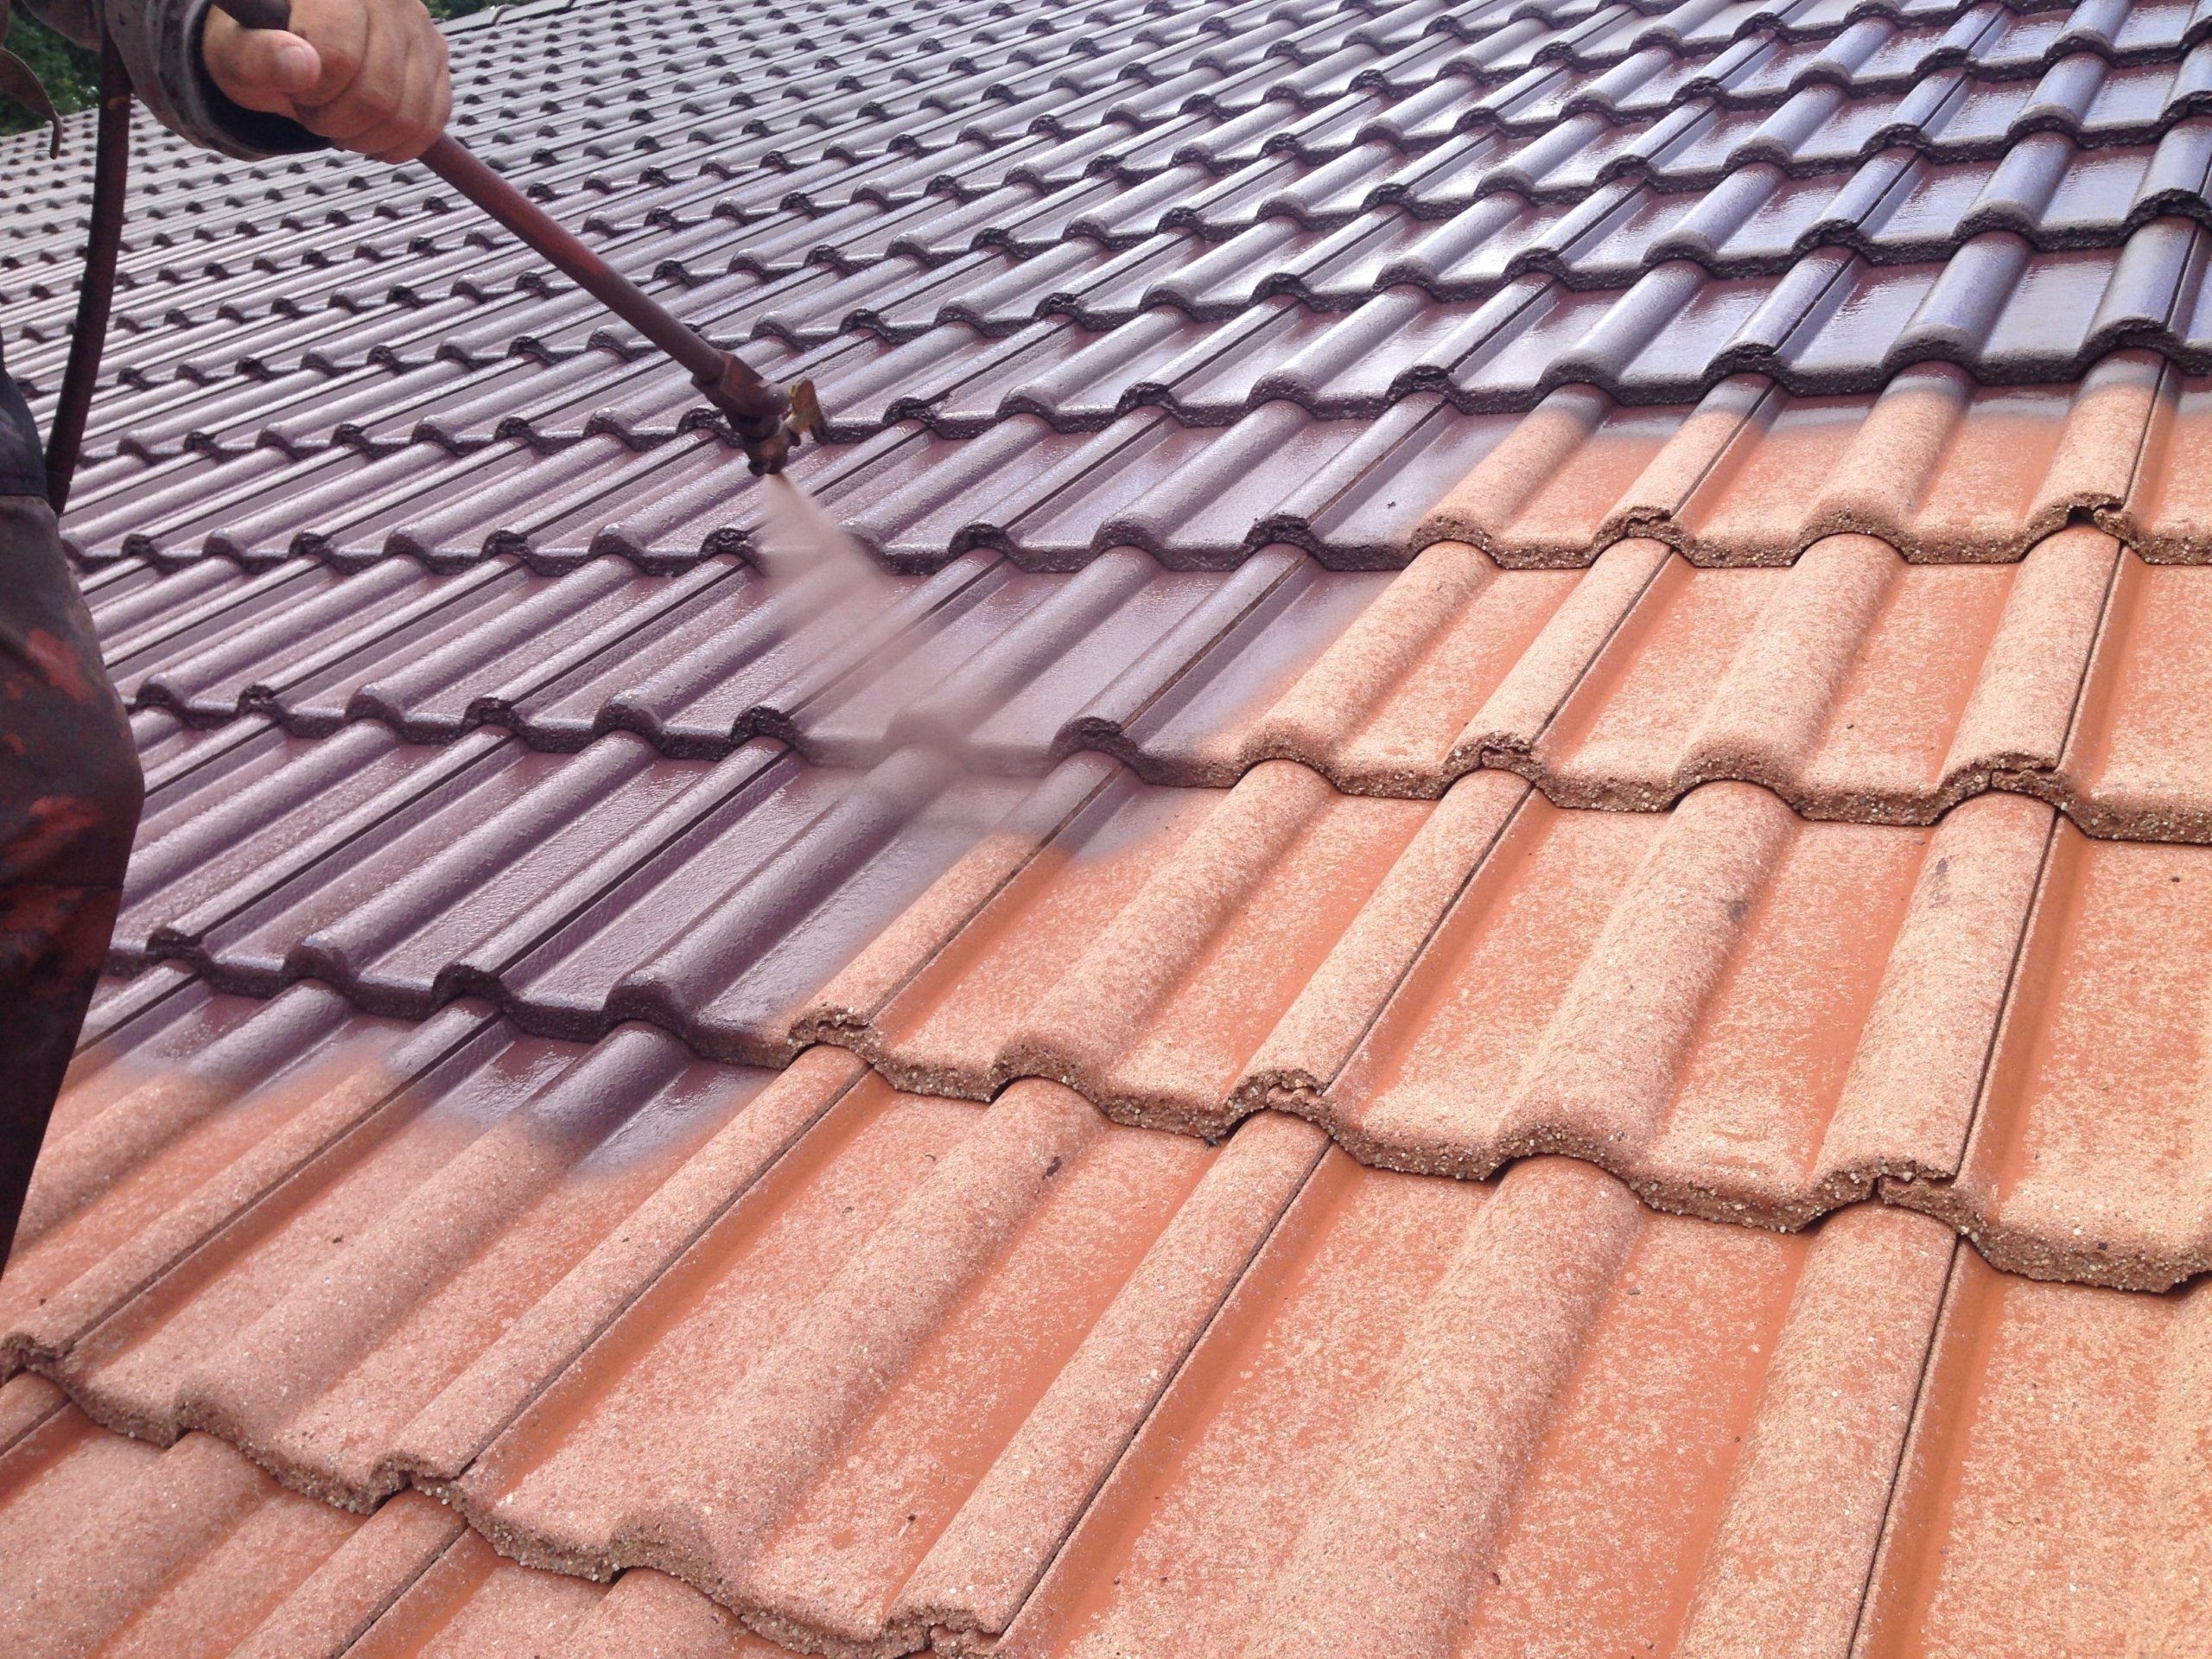 Dachreinigung mit Dachbeschichtung 7 dach beschichten mit airless spr%C3%BChger%C3%A4t in der farbe anthrazit scaled